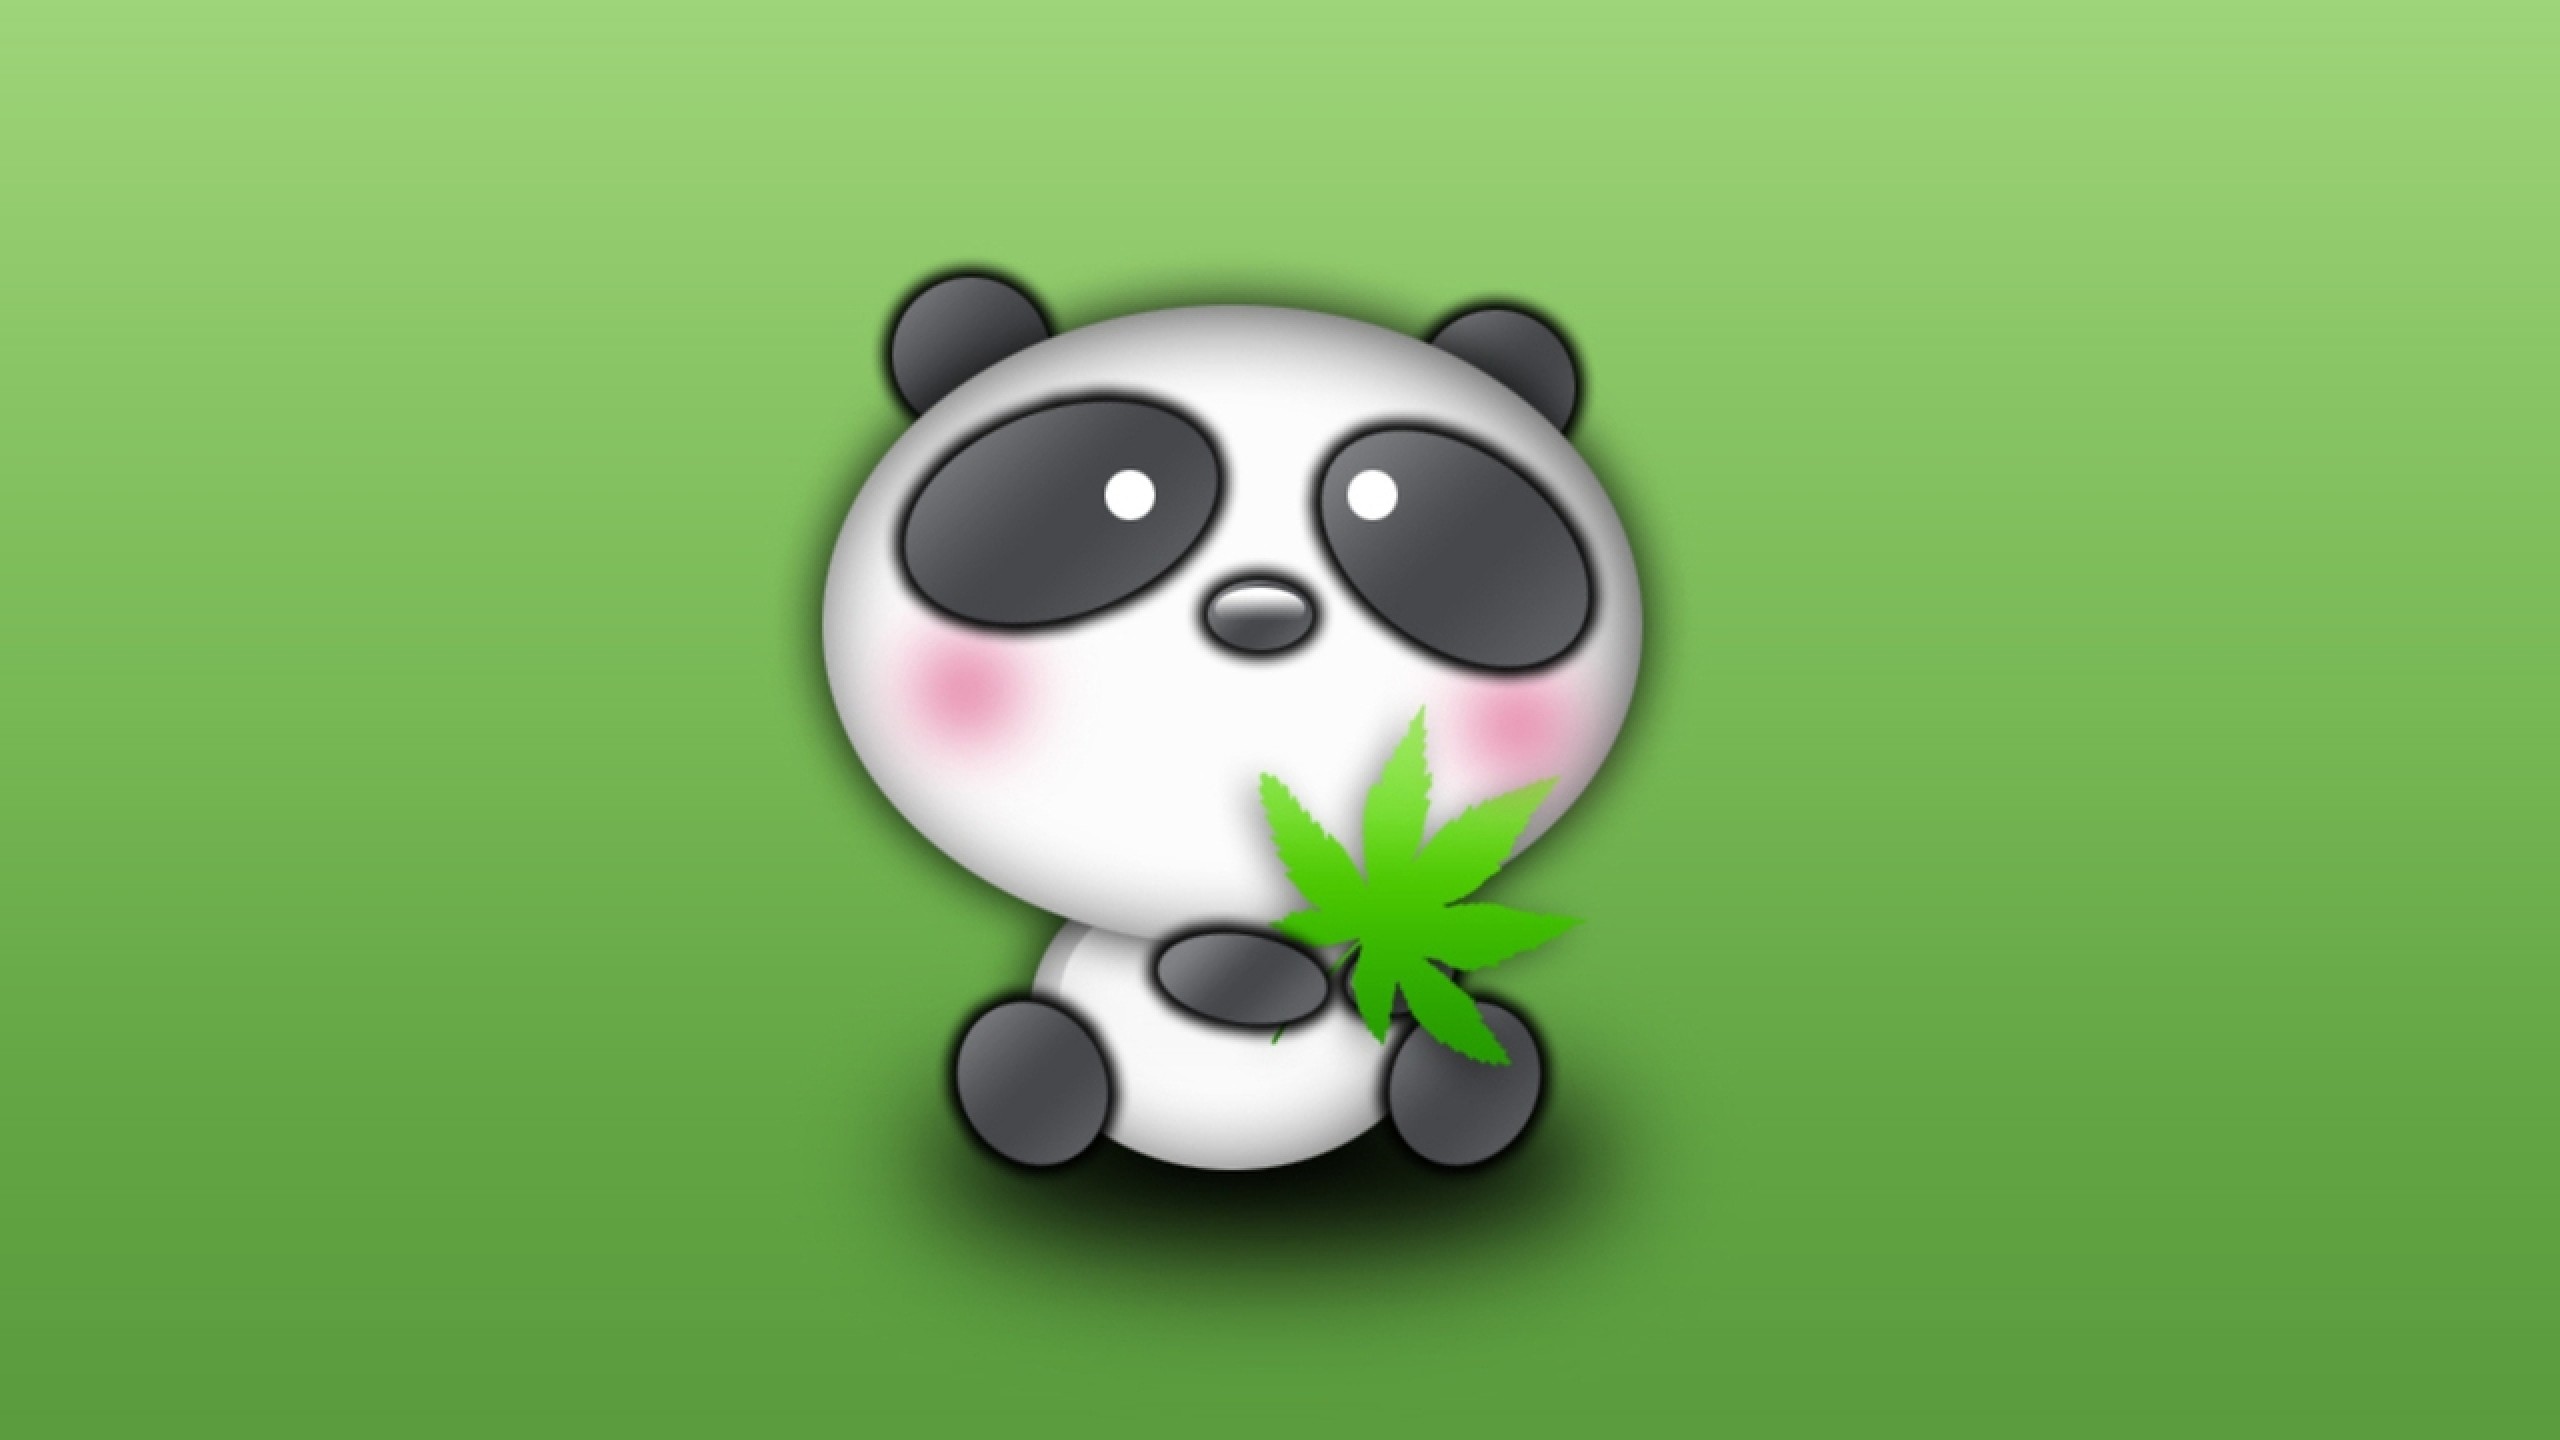 Cute Panda Cartoon Desktop Wallpaper Cute amp Funny Things